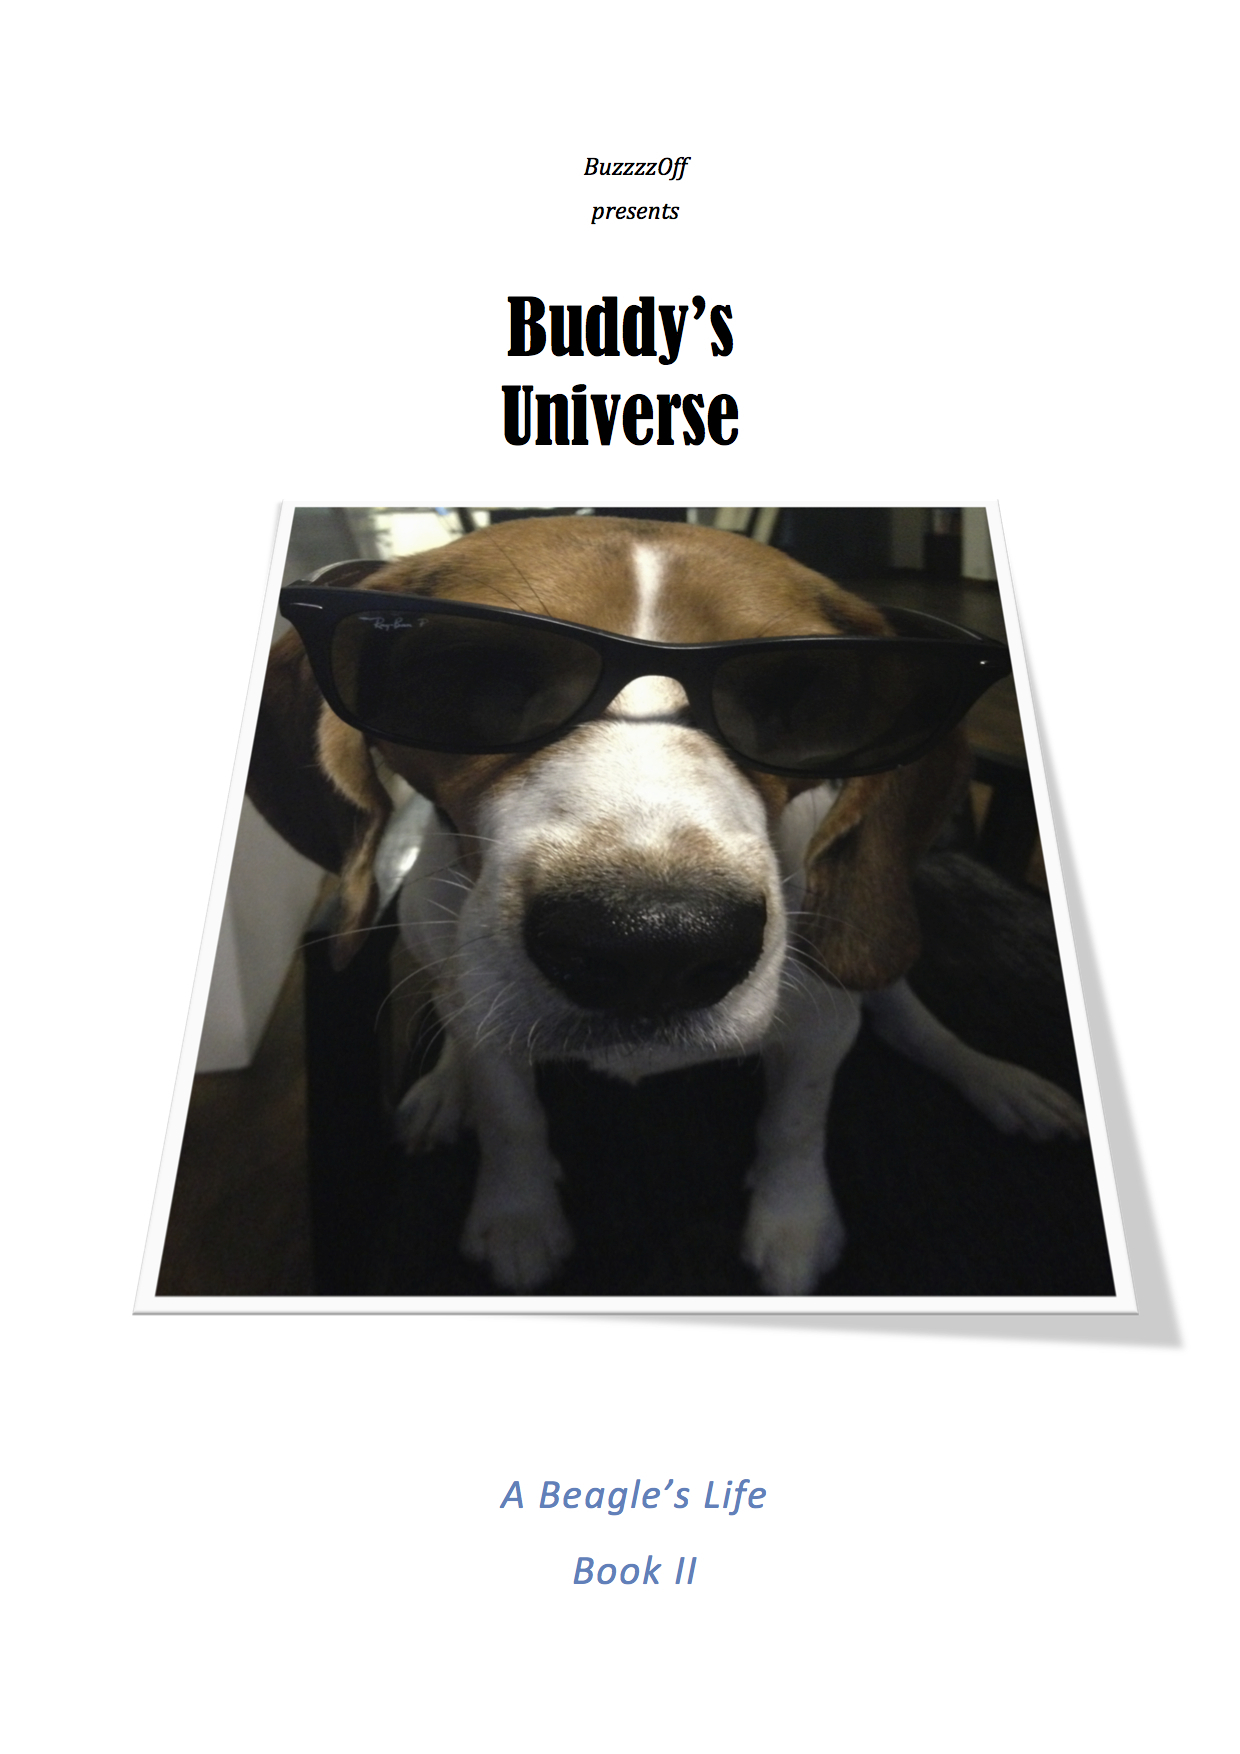 Скачать Buddy's Universe - A Beagle's Life Book II - BuzzzzOff